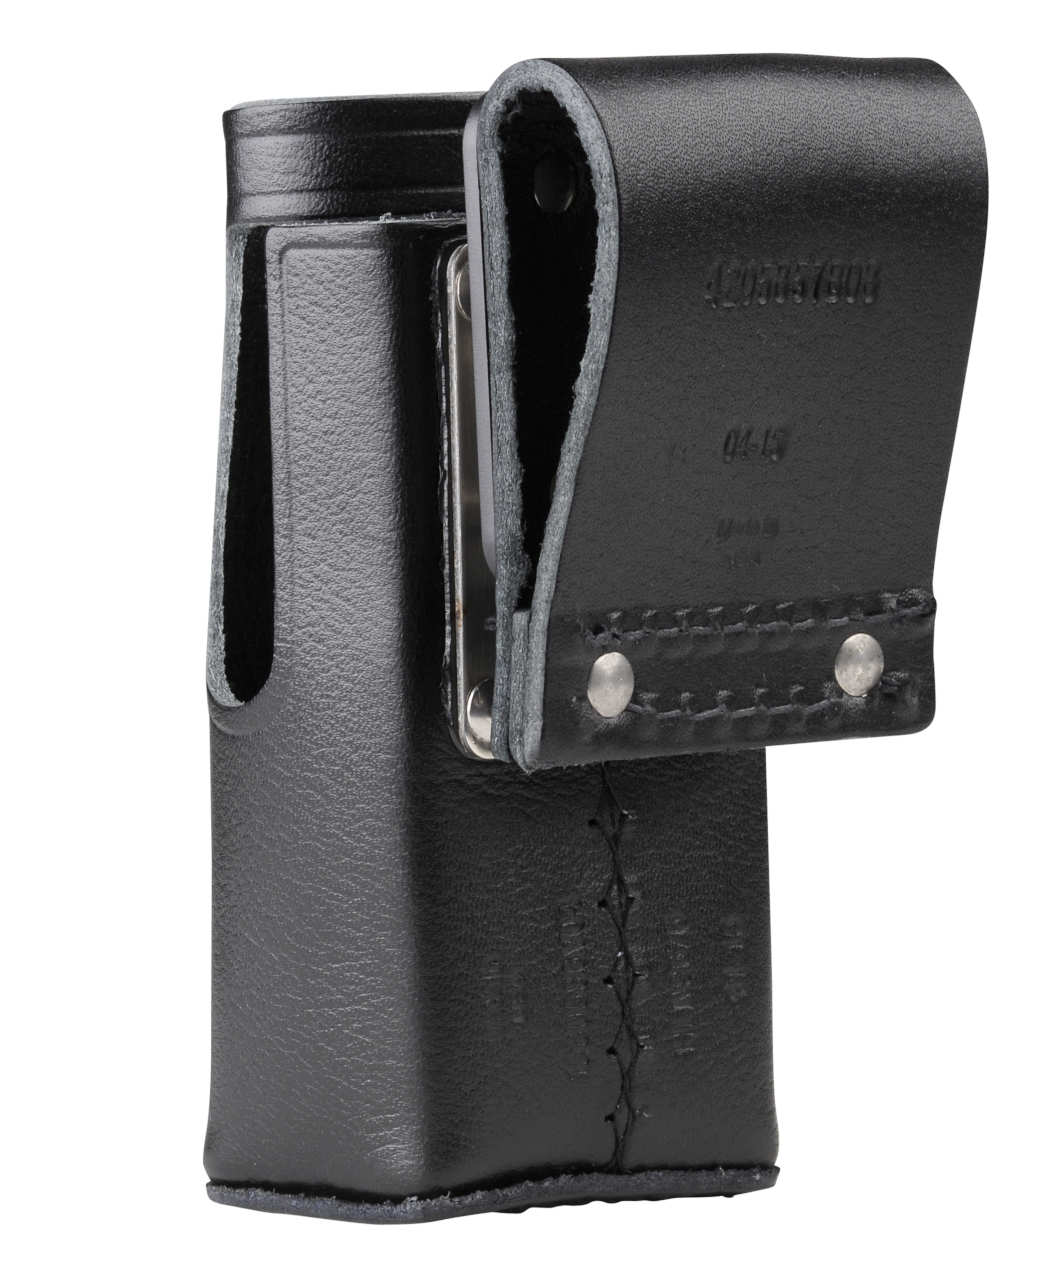 Ledertragetasche mit drehbarer Gürtelschlaufe für Modelle ohne Tastatur HLN9676A